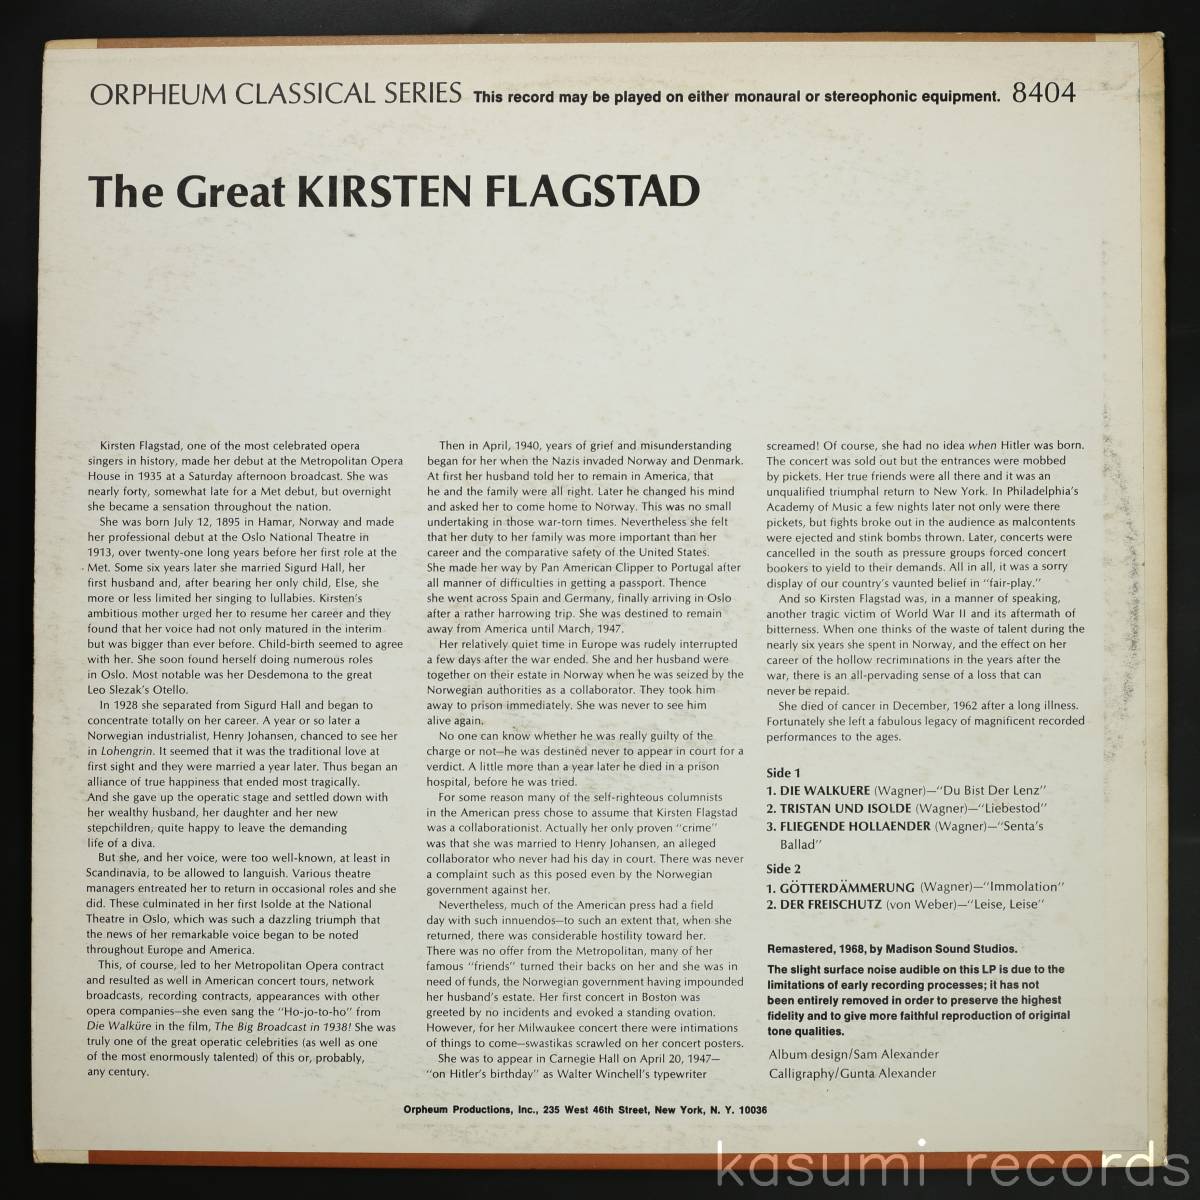 【US盤LP】キルステン・フラグスタート/GREAT KIRSTEN FLAGSTAD(並品,68年リマスター盤,ORPHEUM)_画像2